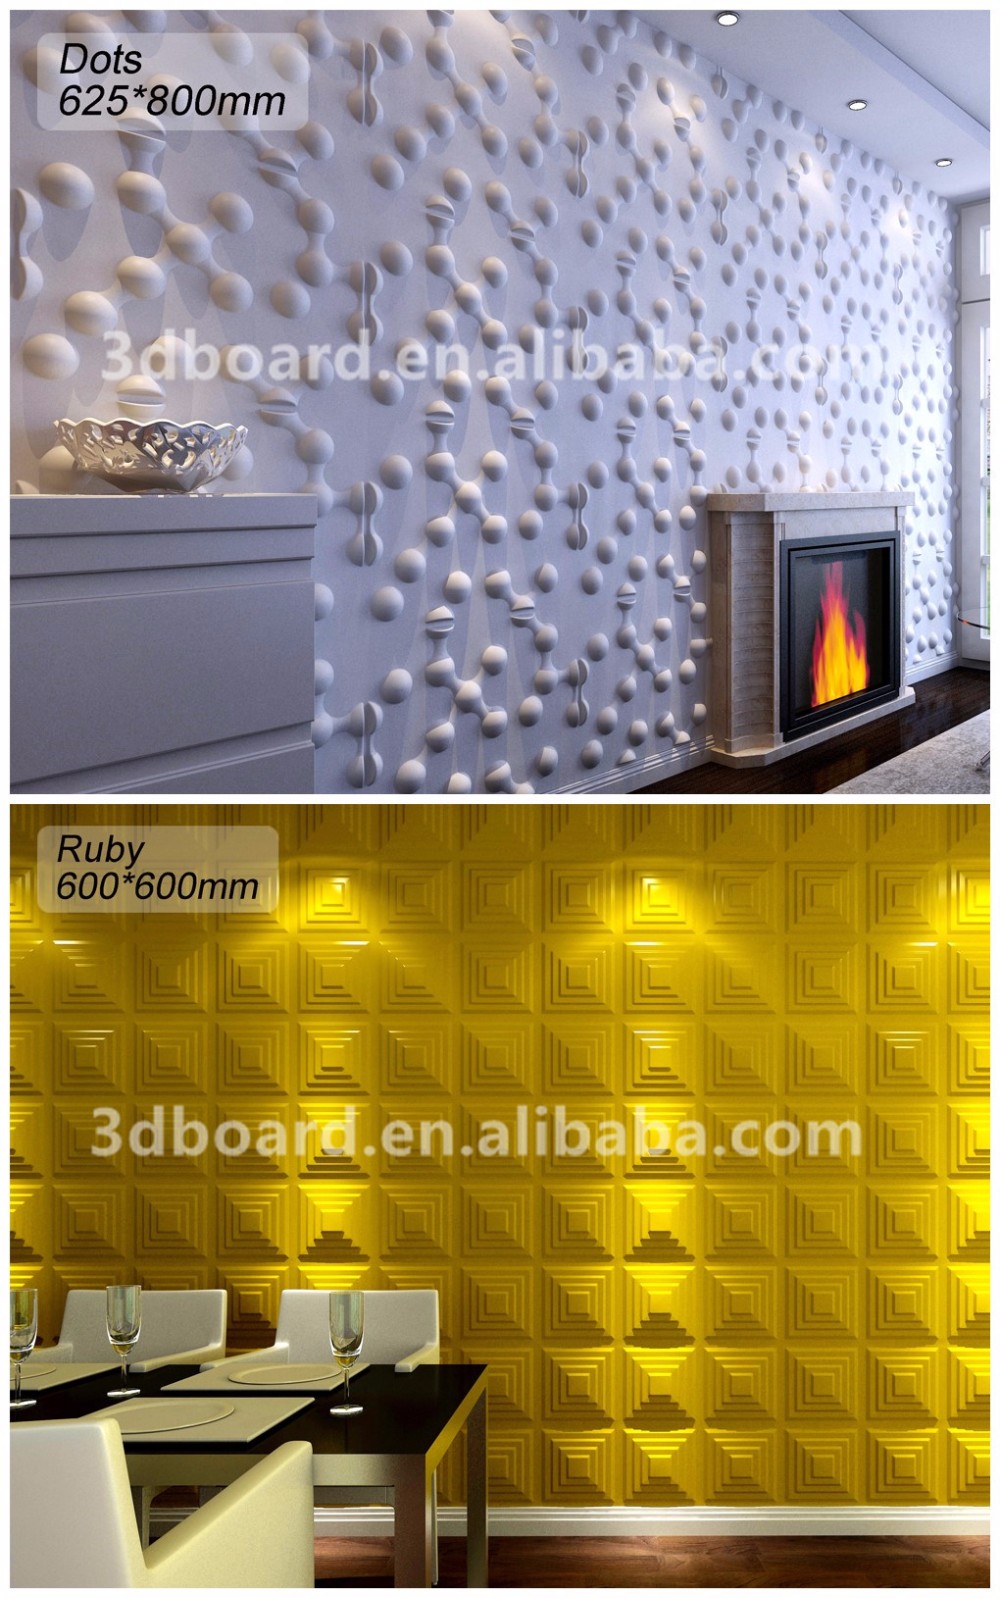 Fibre Panels For Wall - HD Wallpaper 